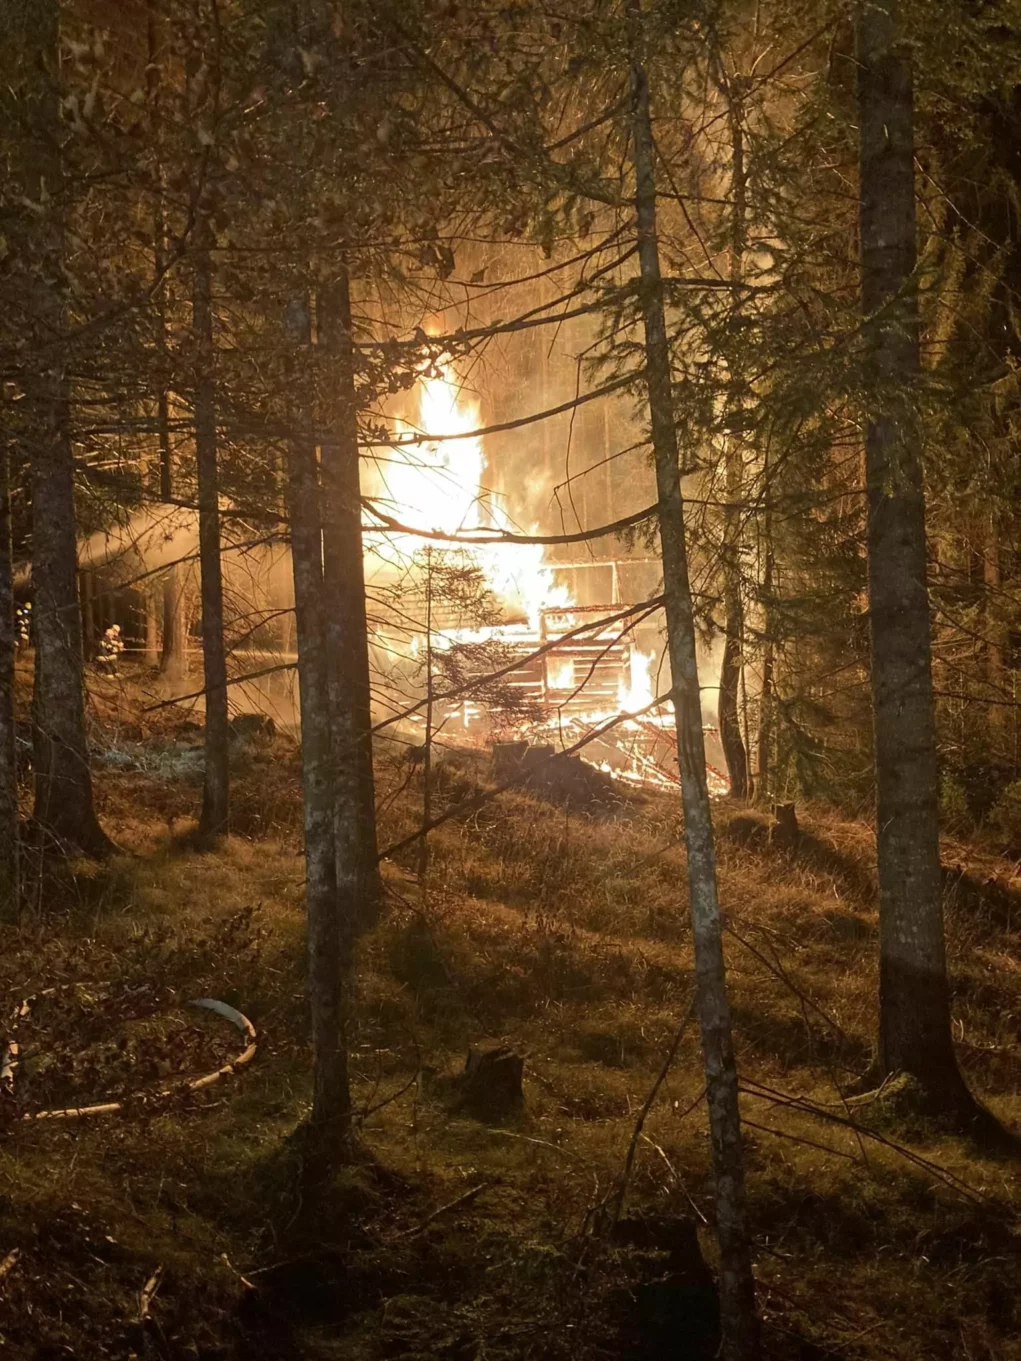 Bis ins Tal sichtbar: Jagdhütte beim Reißkofel brennt vollständig ab